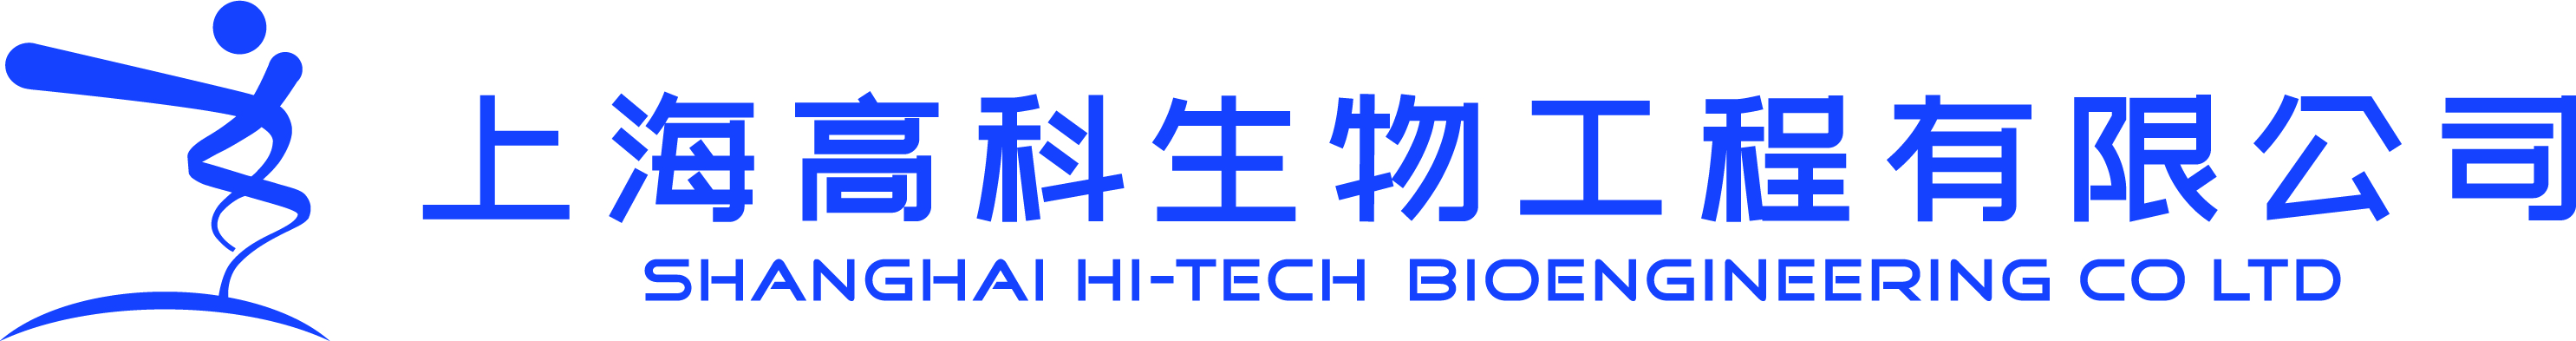 上海高科生物工程公司有限公司